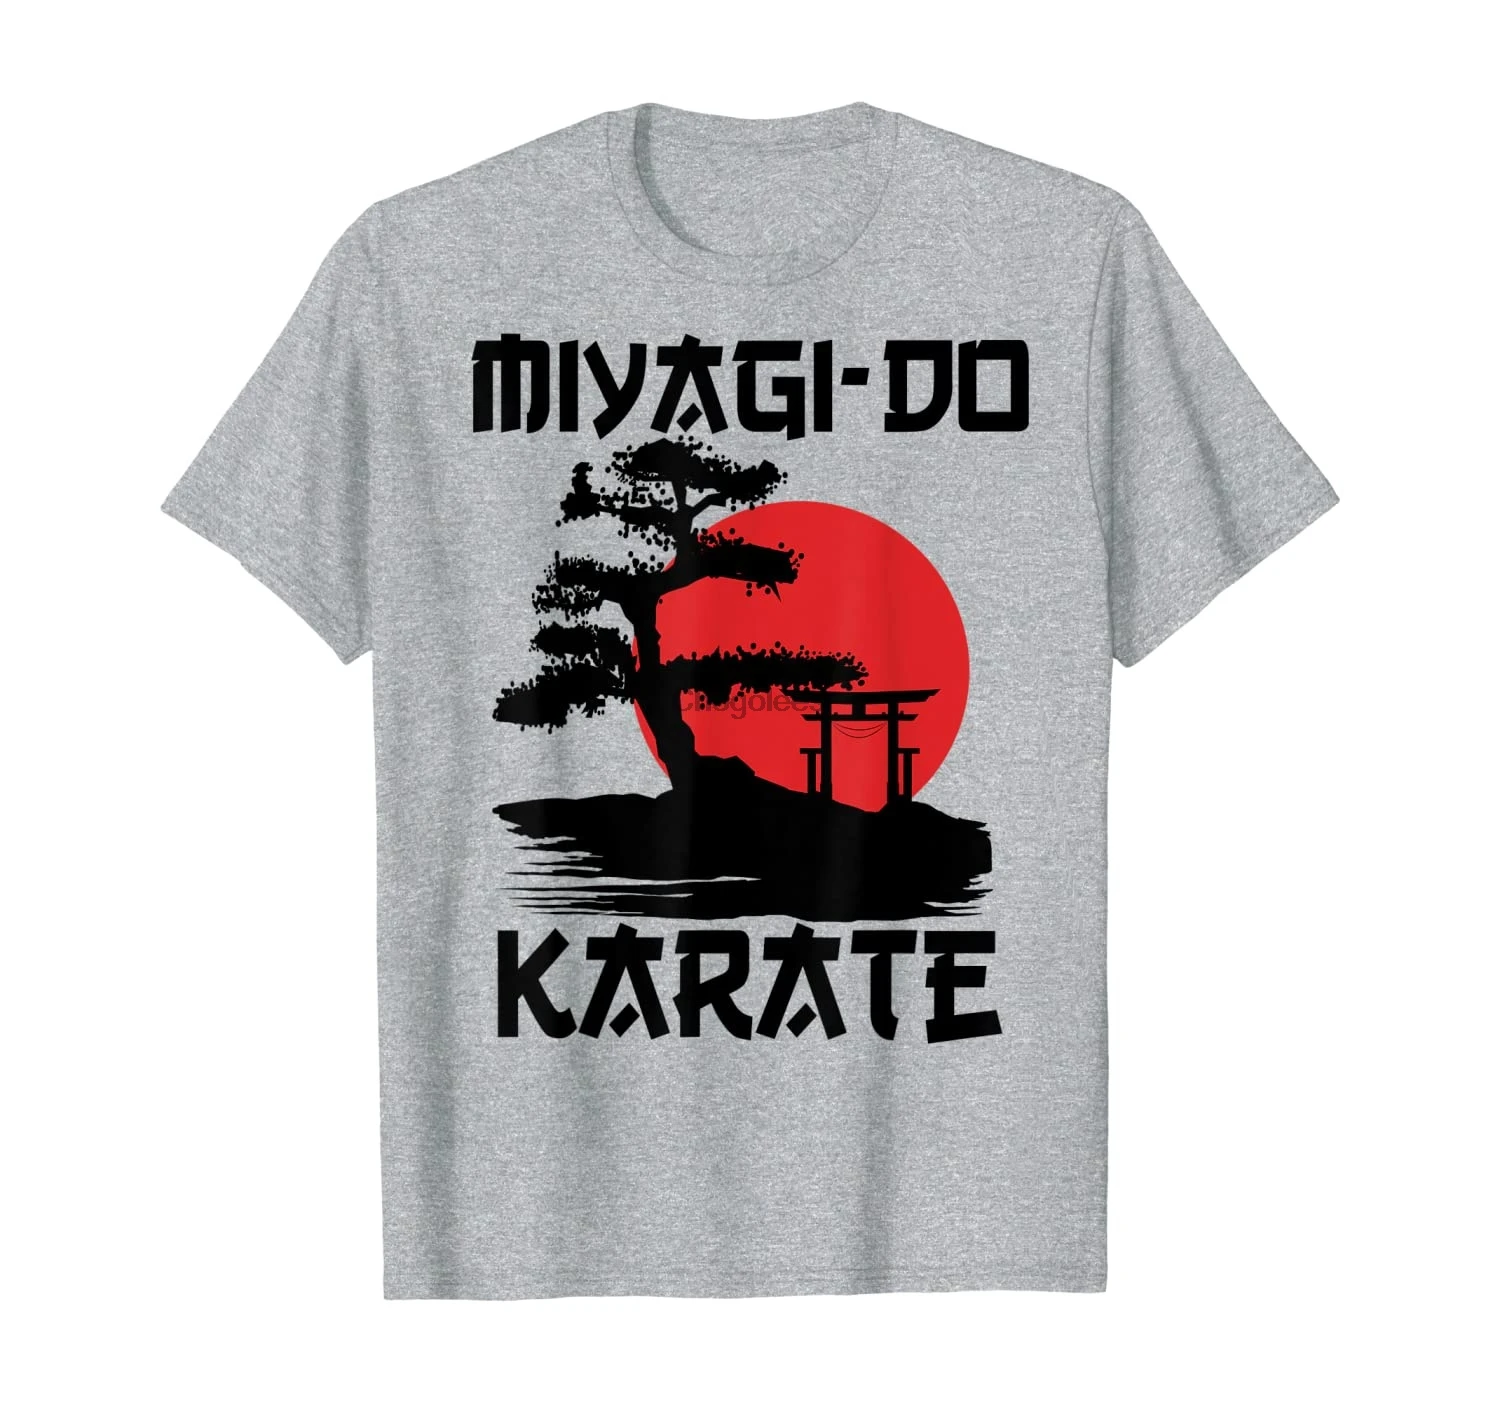 Ретро Винтажная футболка для боевых искусств мигаги-до карате бонсай | Мужская